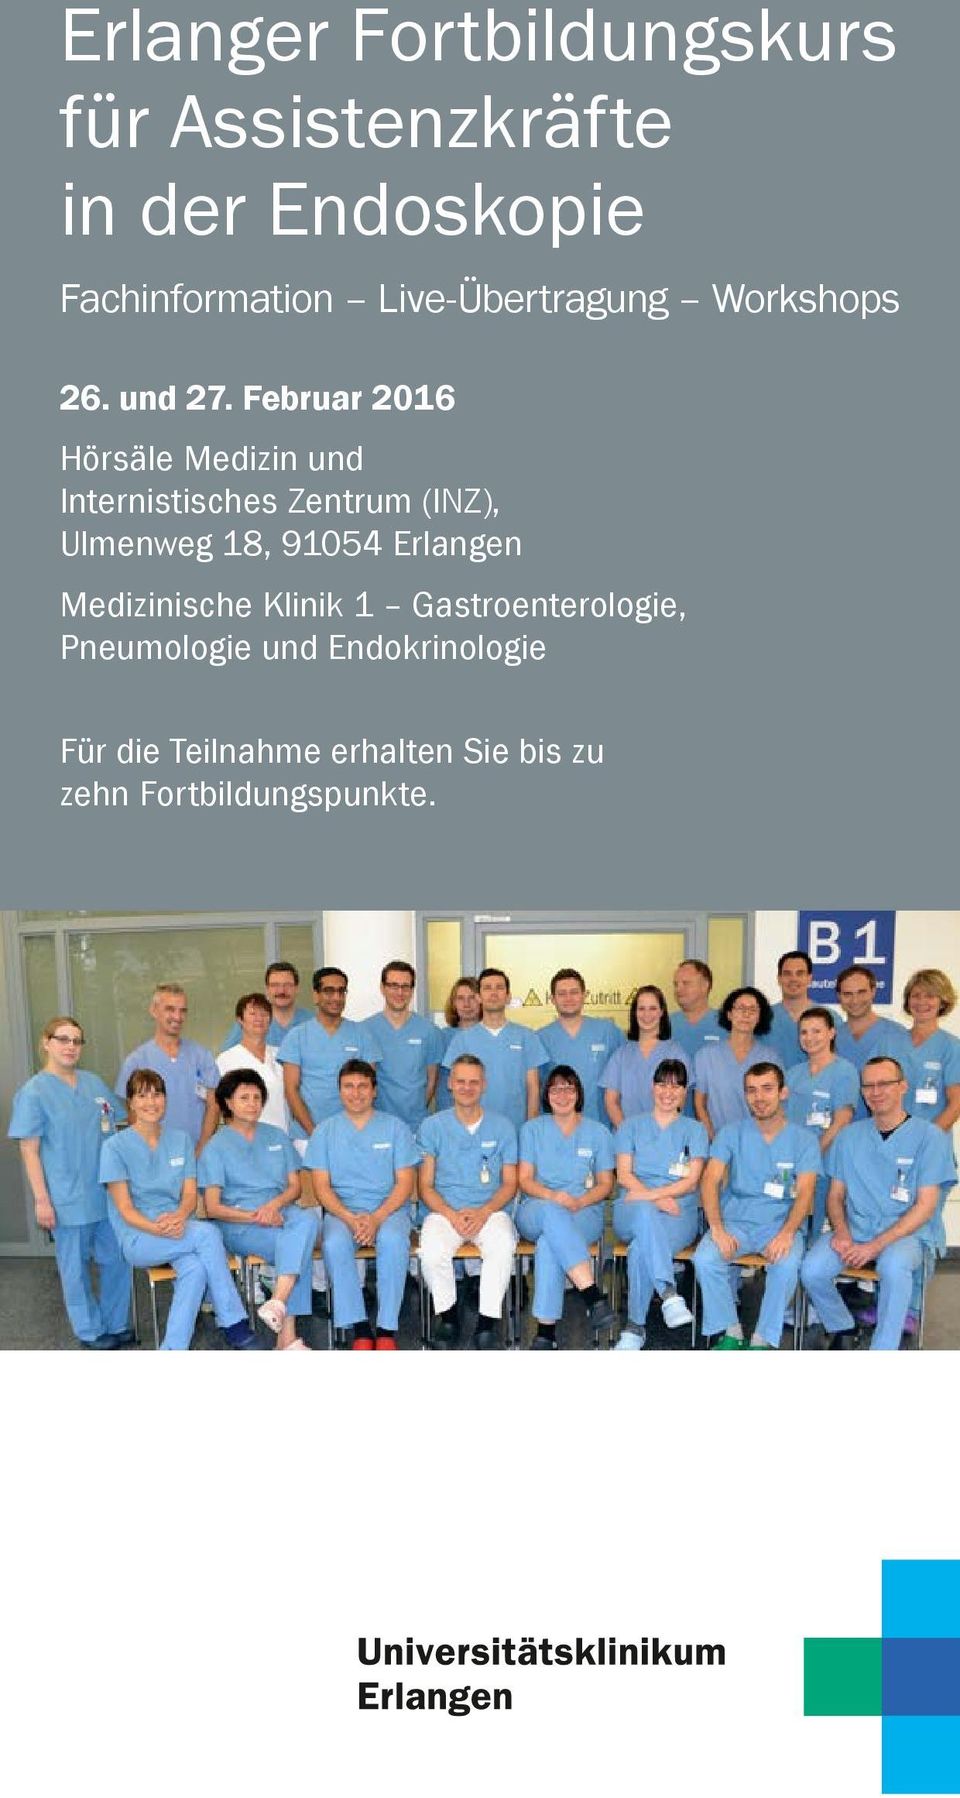 Februar 2016 Hörsäle Medizin und Internistisches Zentrum (INZ), Ulmenweg 18, 91054